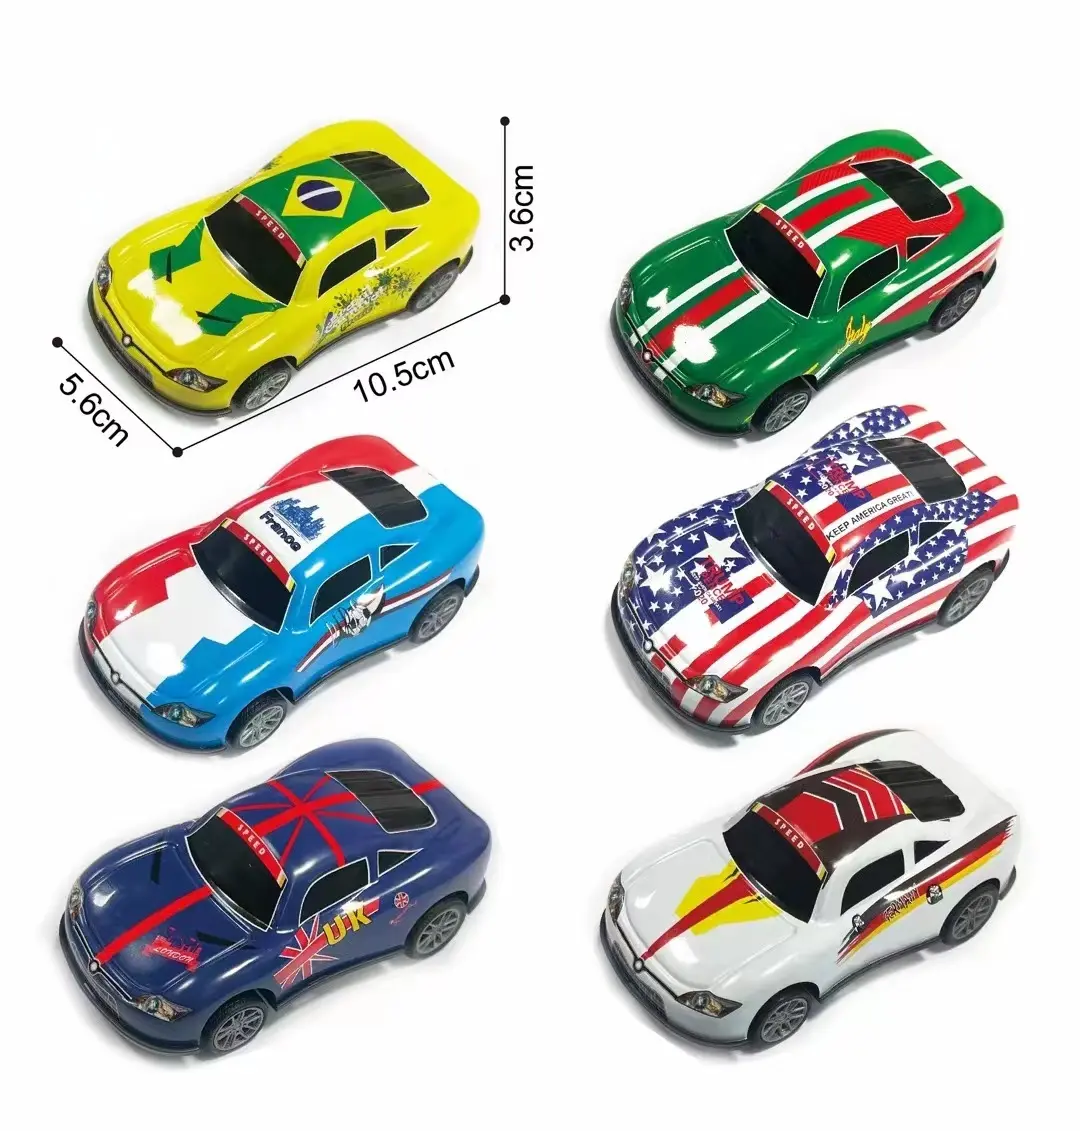 10,5 cm billig Diecast Alloy Kleinwagen zurückziehen Eisens pielzeug Mini Kinderspiel zeug für Werbe geschenk Alloy Car Toy Set